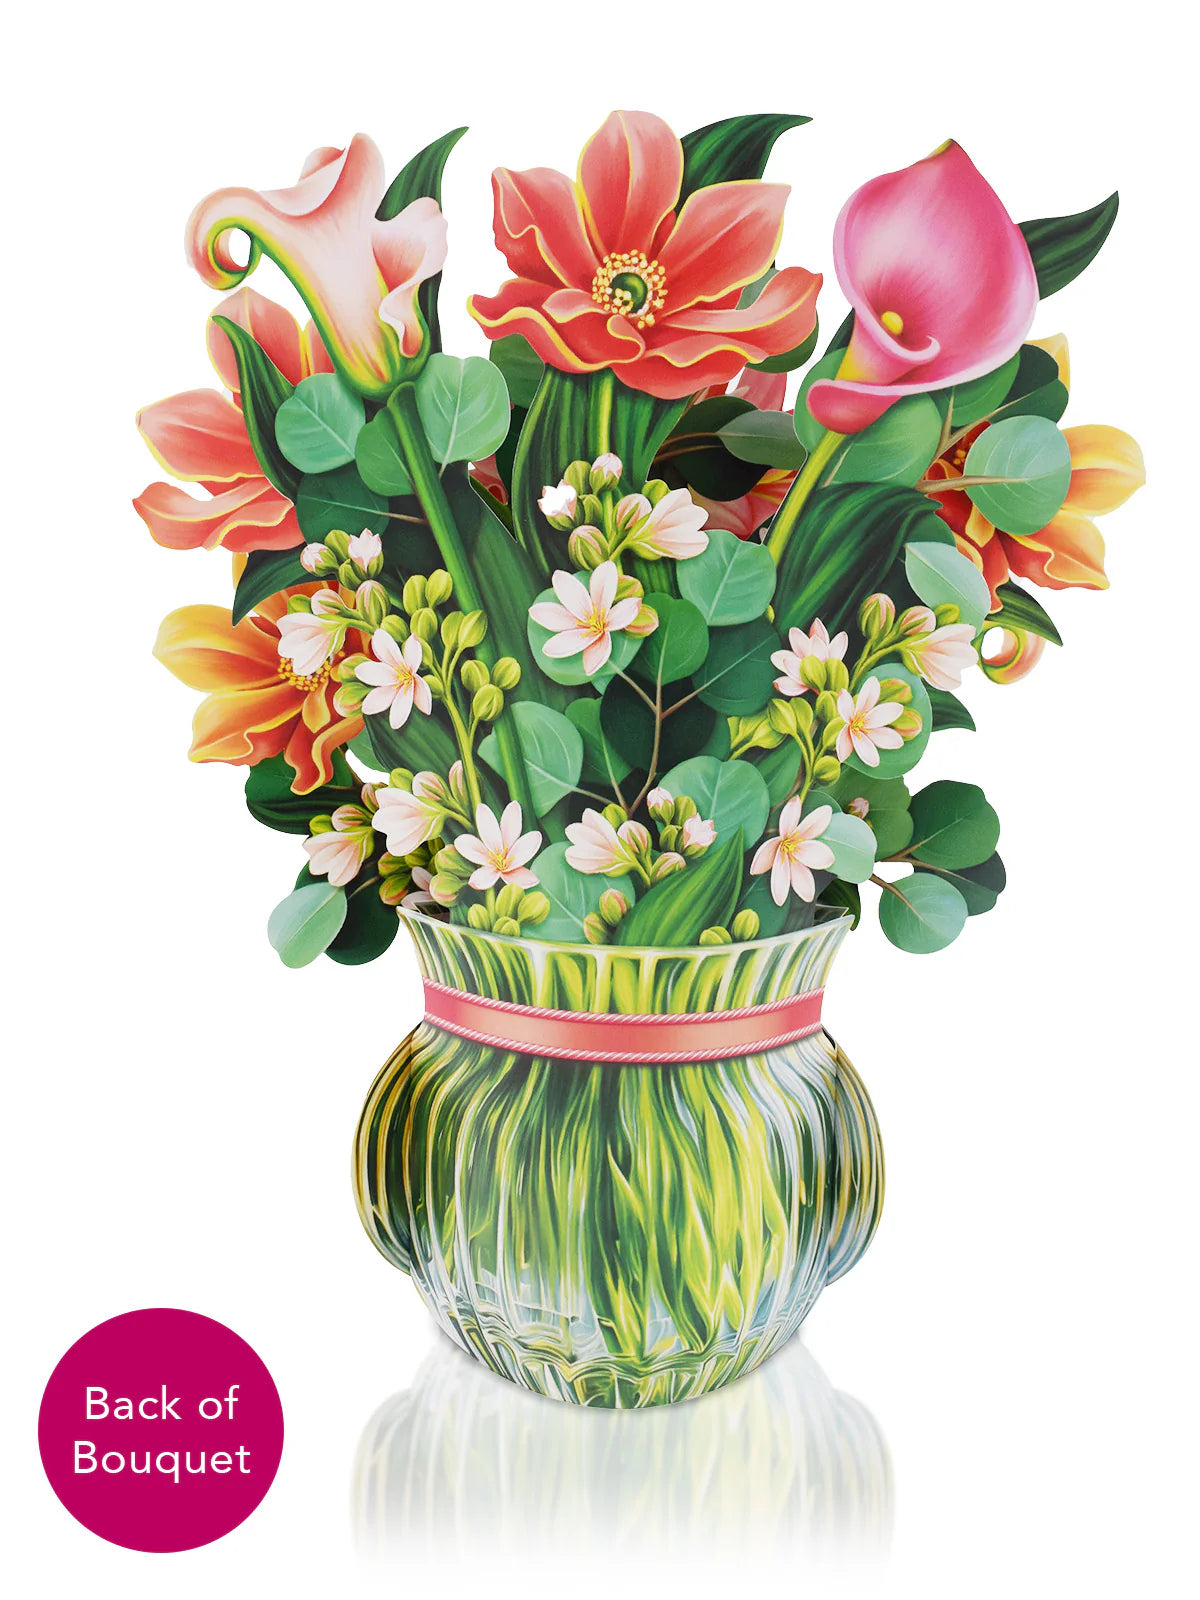 Dear Dahlia Pop Up Flower Bouquet Greeting Card    